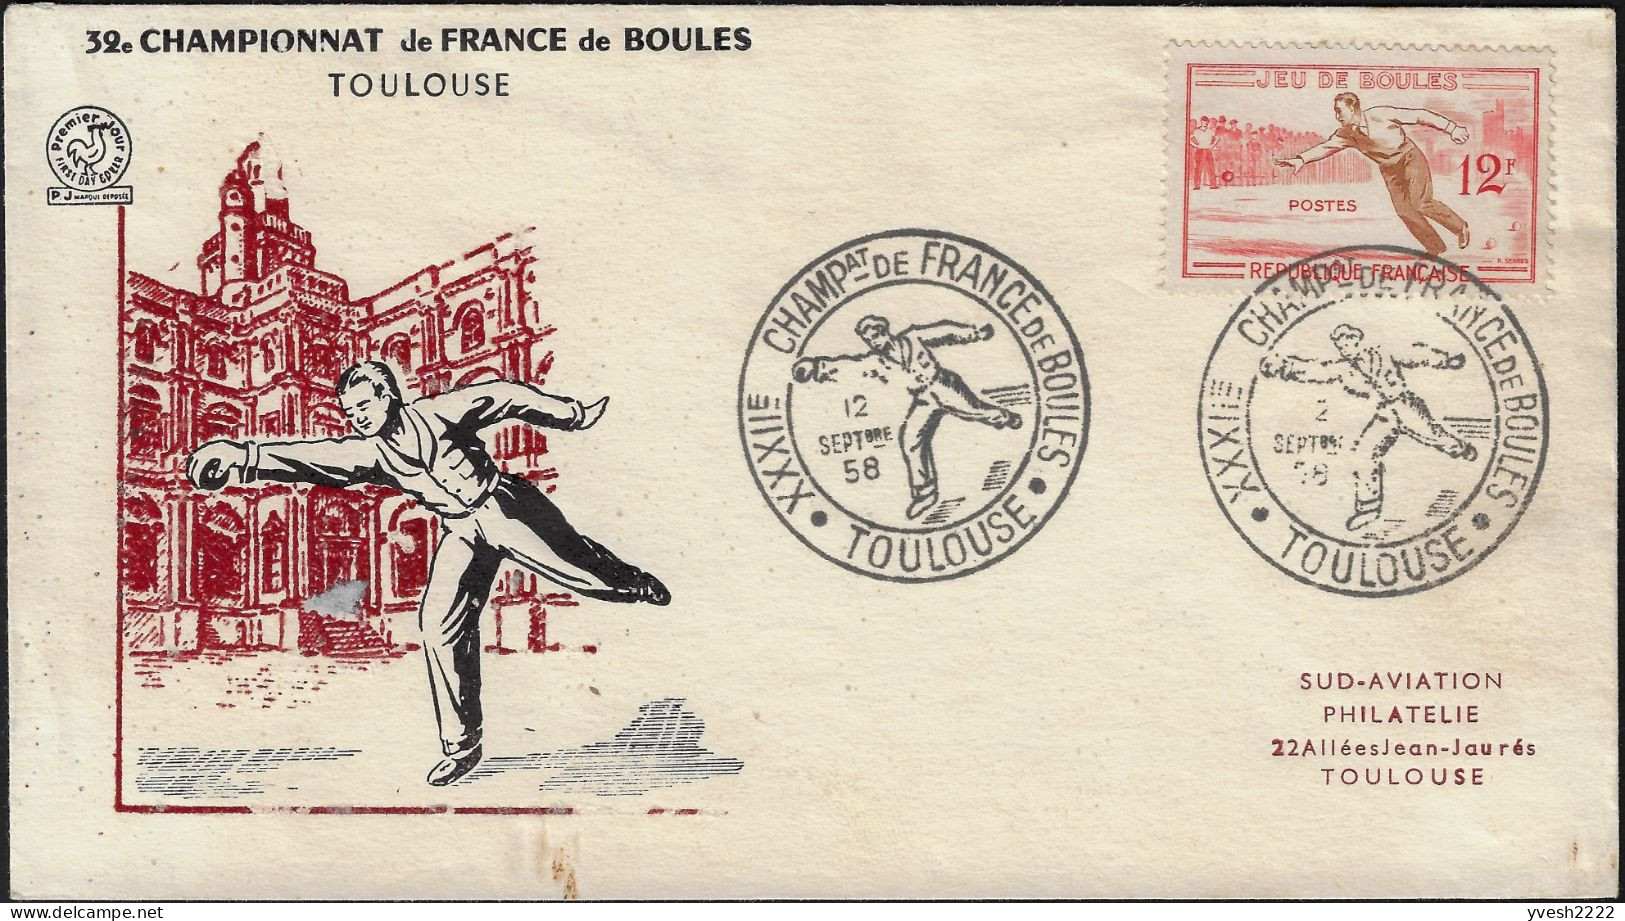 France 1958 Y&T 1161. Enveloppe, Jeu De Boules. Championnat De France, Toulouse - Bowls